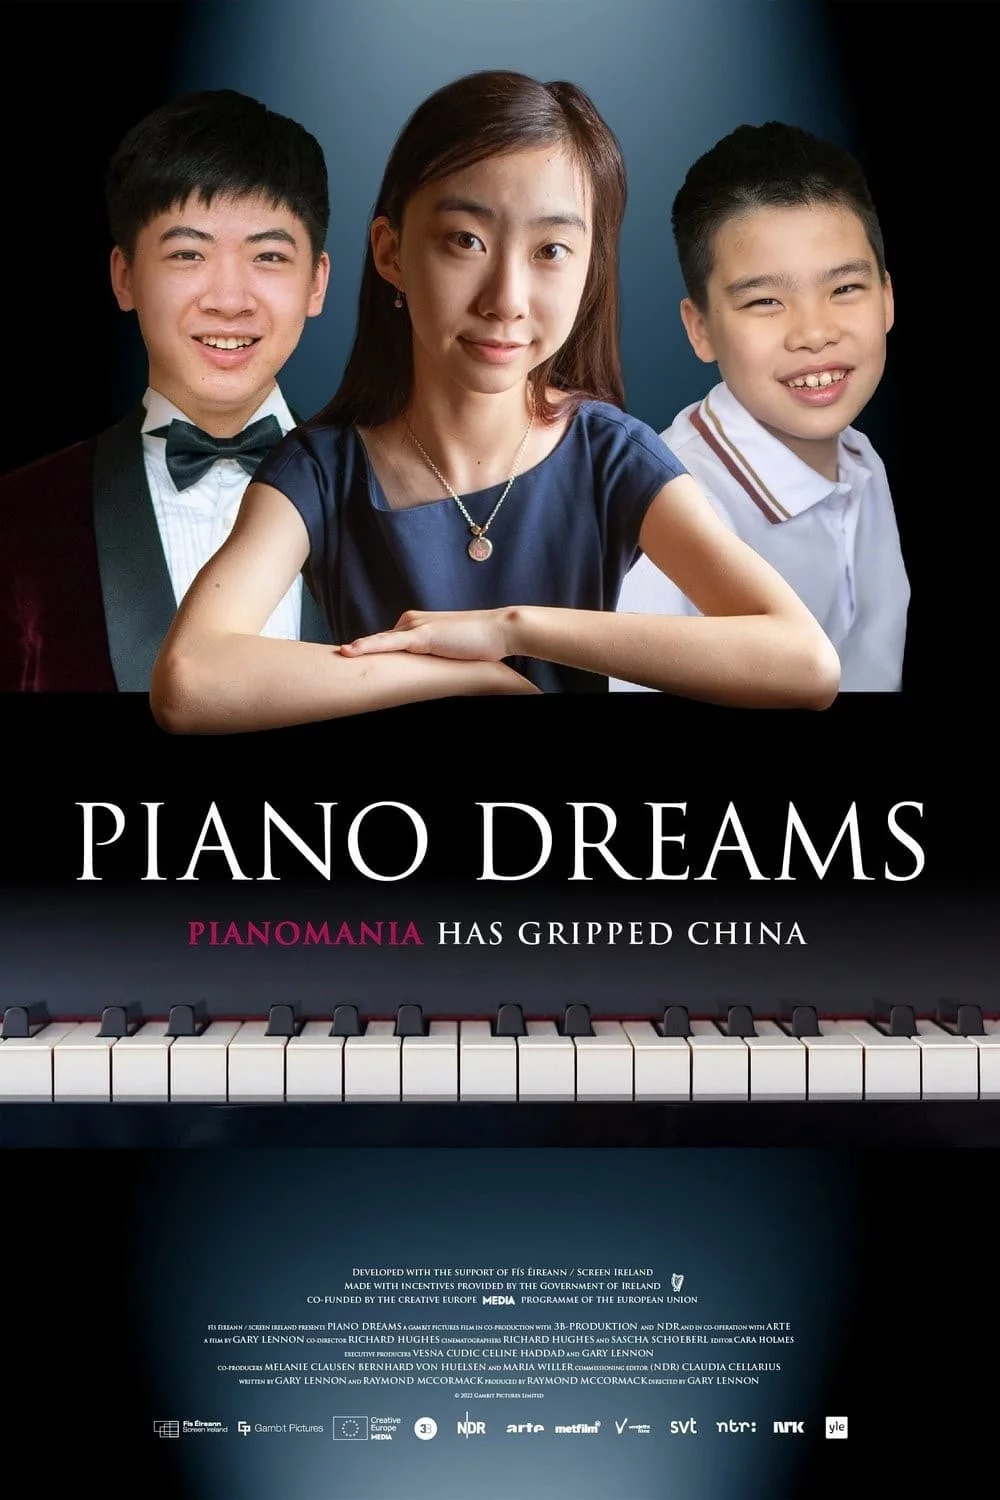 Photo 1 du film : Les enfants pianistes chinois et leur rêve de carrière